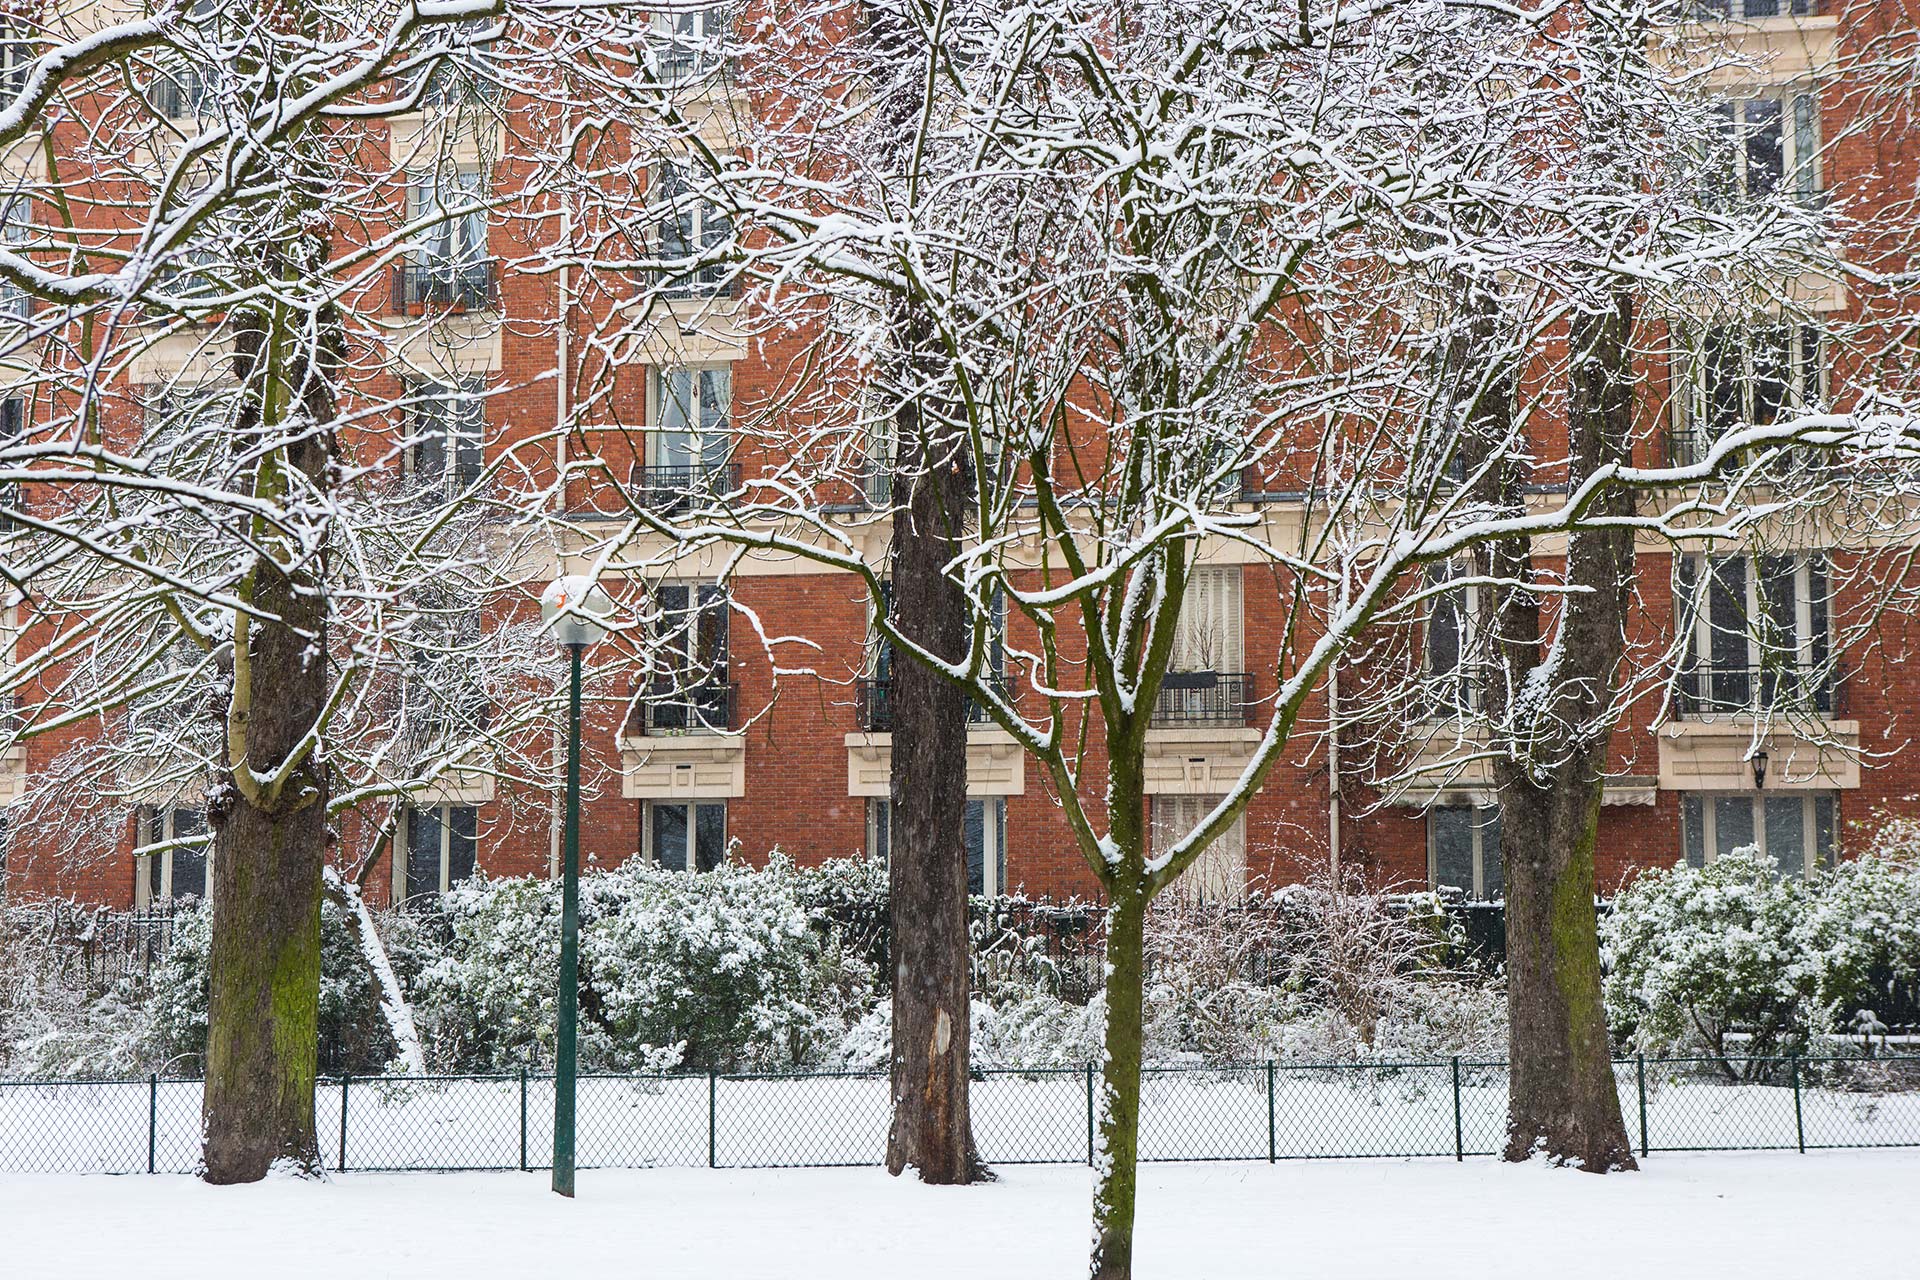 Vincennes sous la neige, rue enneigée